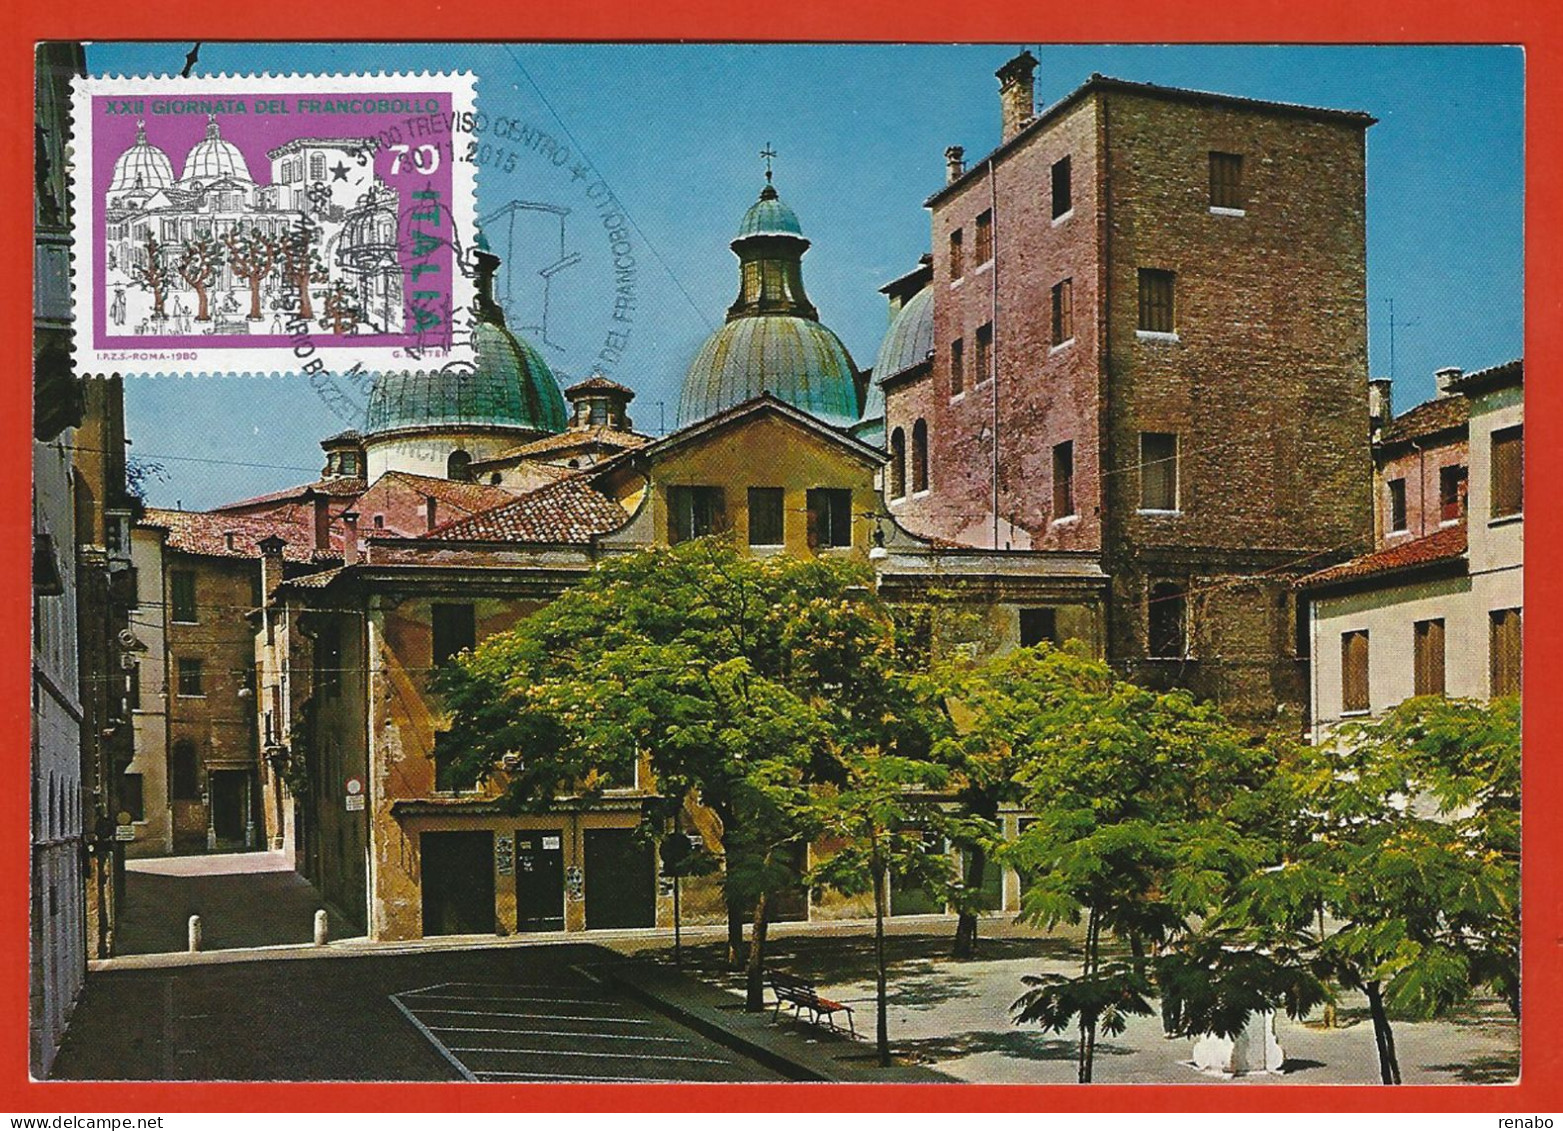 Italia 2015; Maximum Card, Piazza Pola A Treviso In: Giornata Francobollo 1980, In Cartolina, Annullo Speciale. - Cartas Máxima